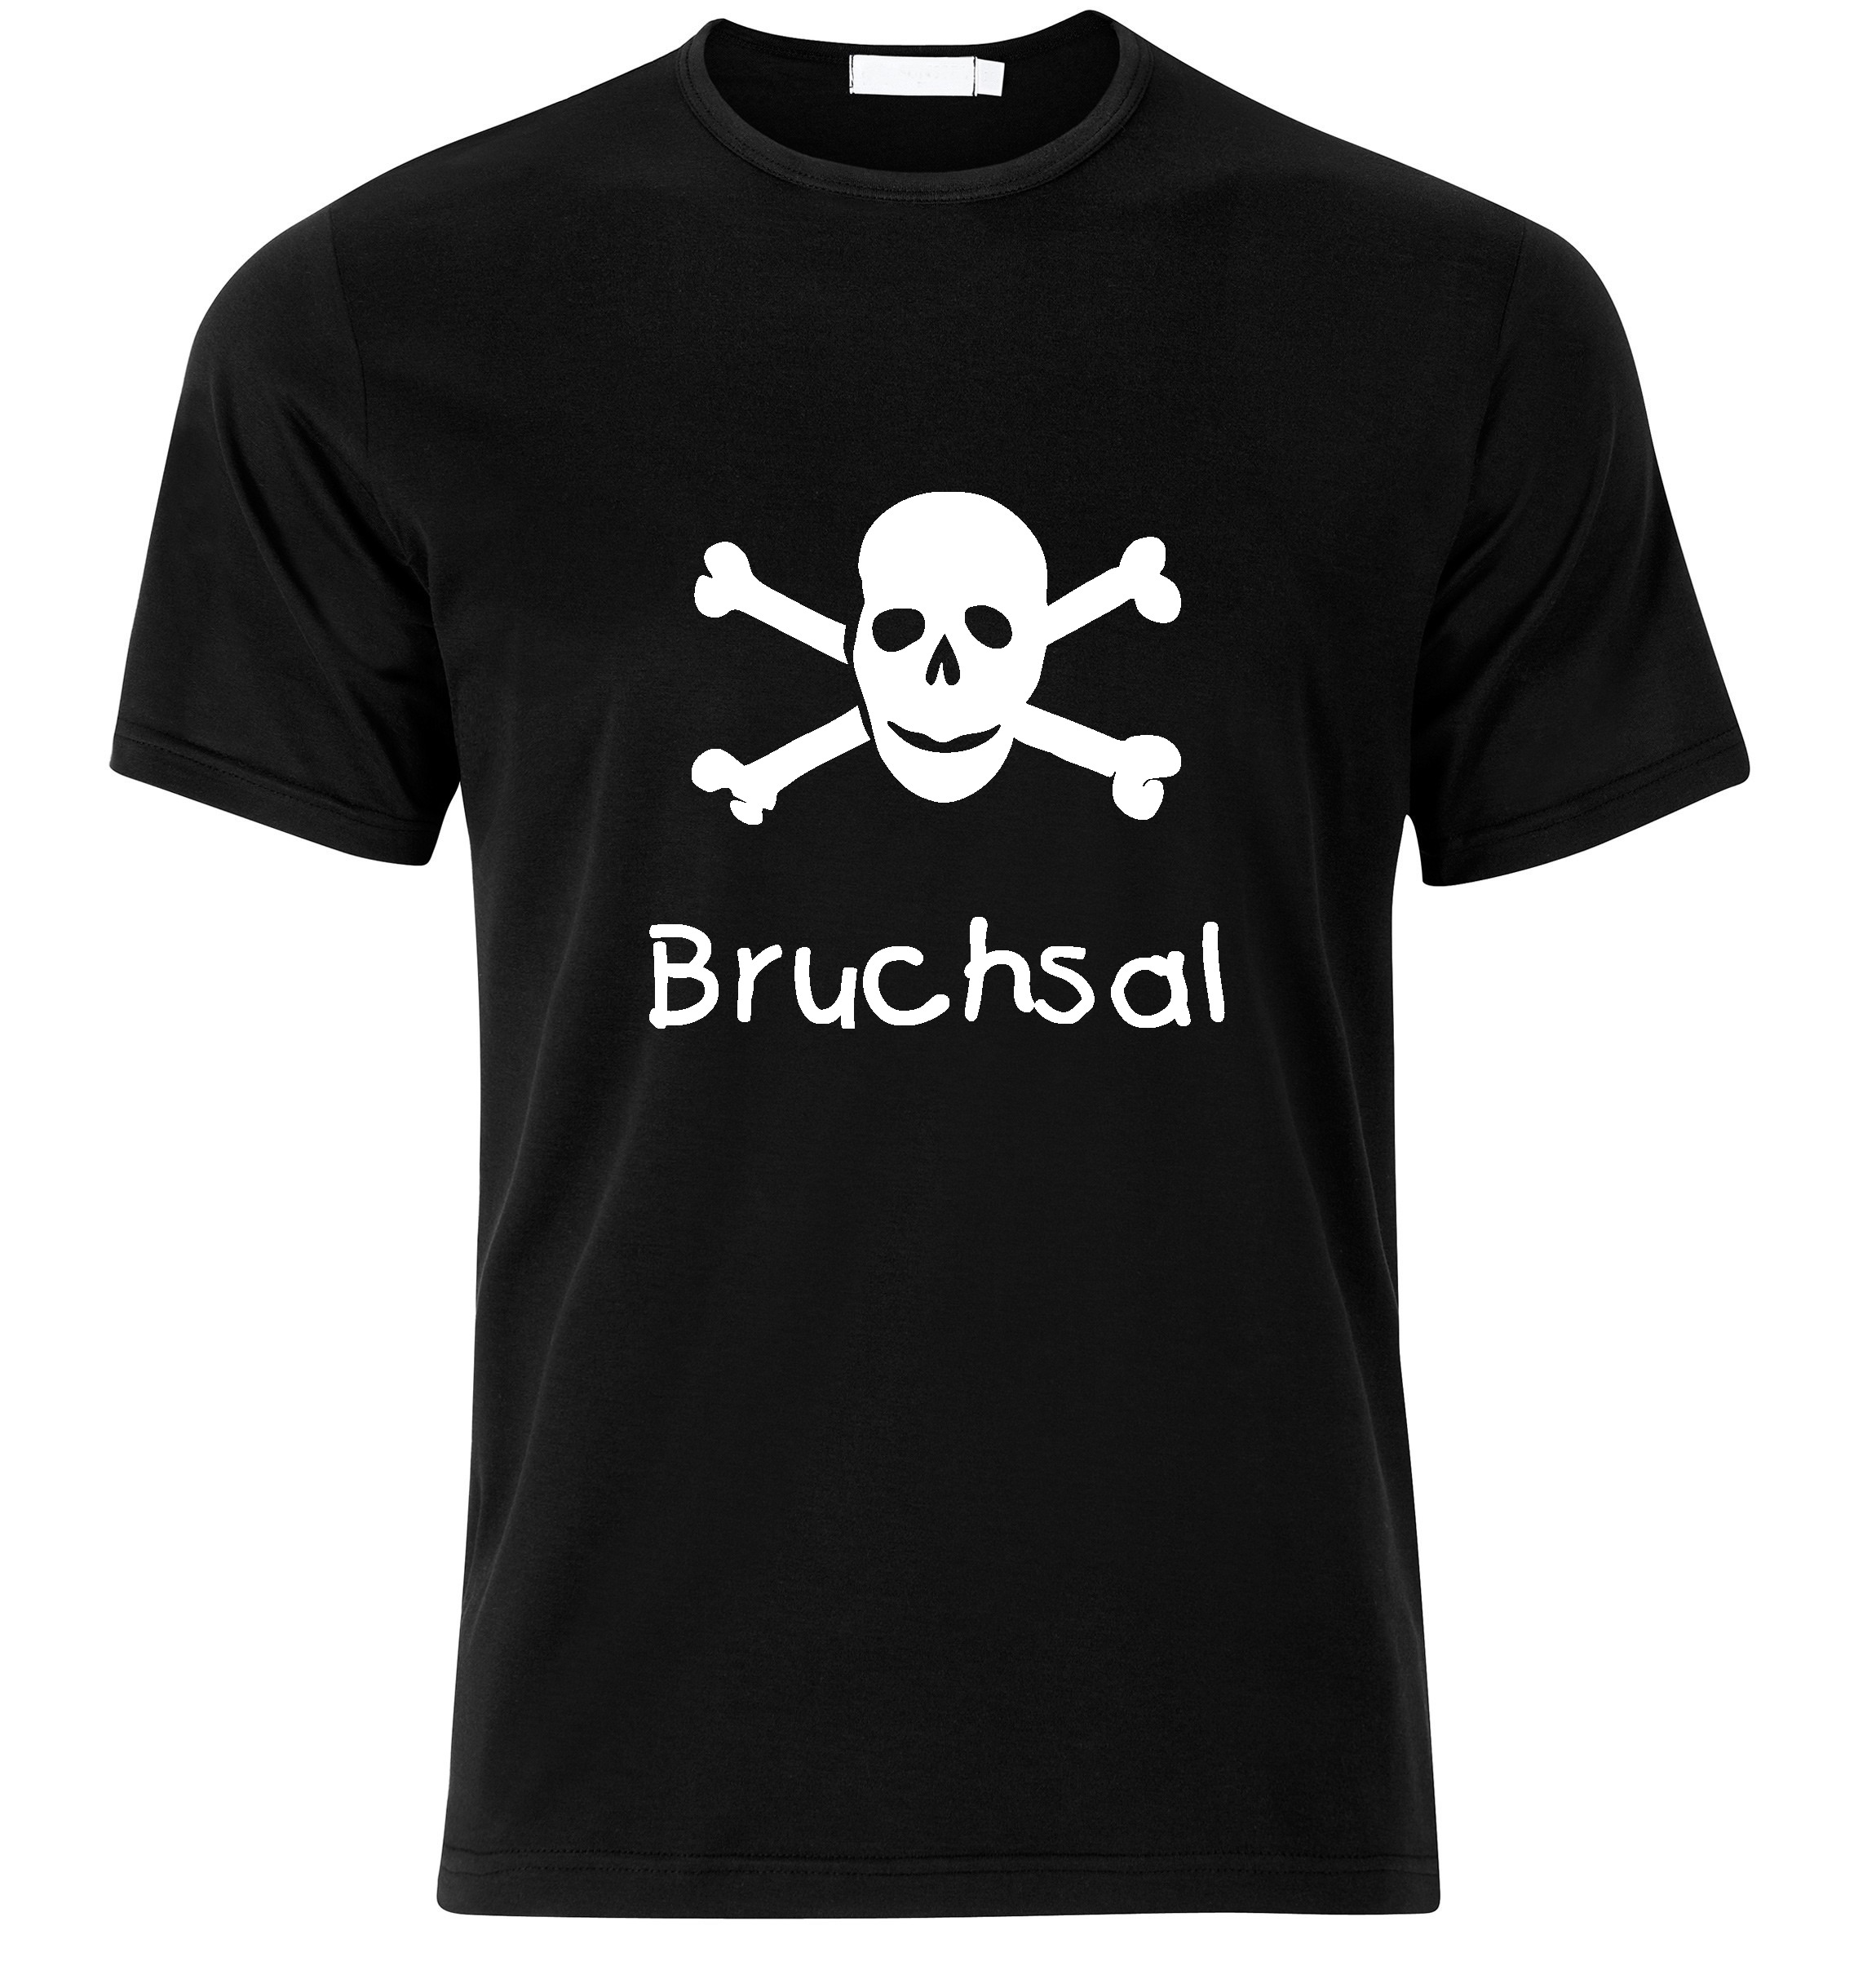 T-Shirt Bruchsal Jolly Roger, Totenkopf